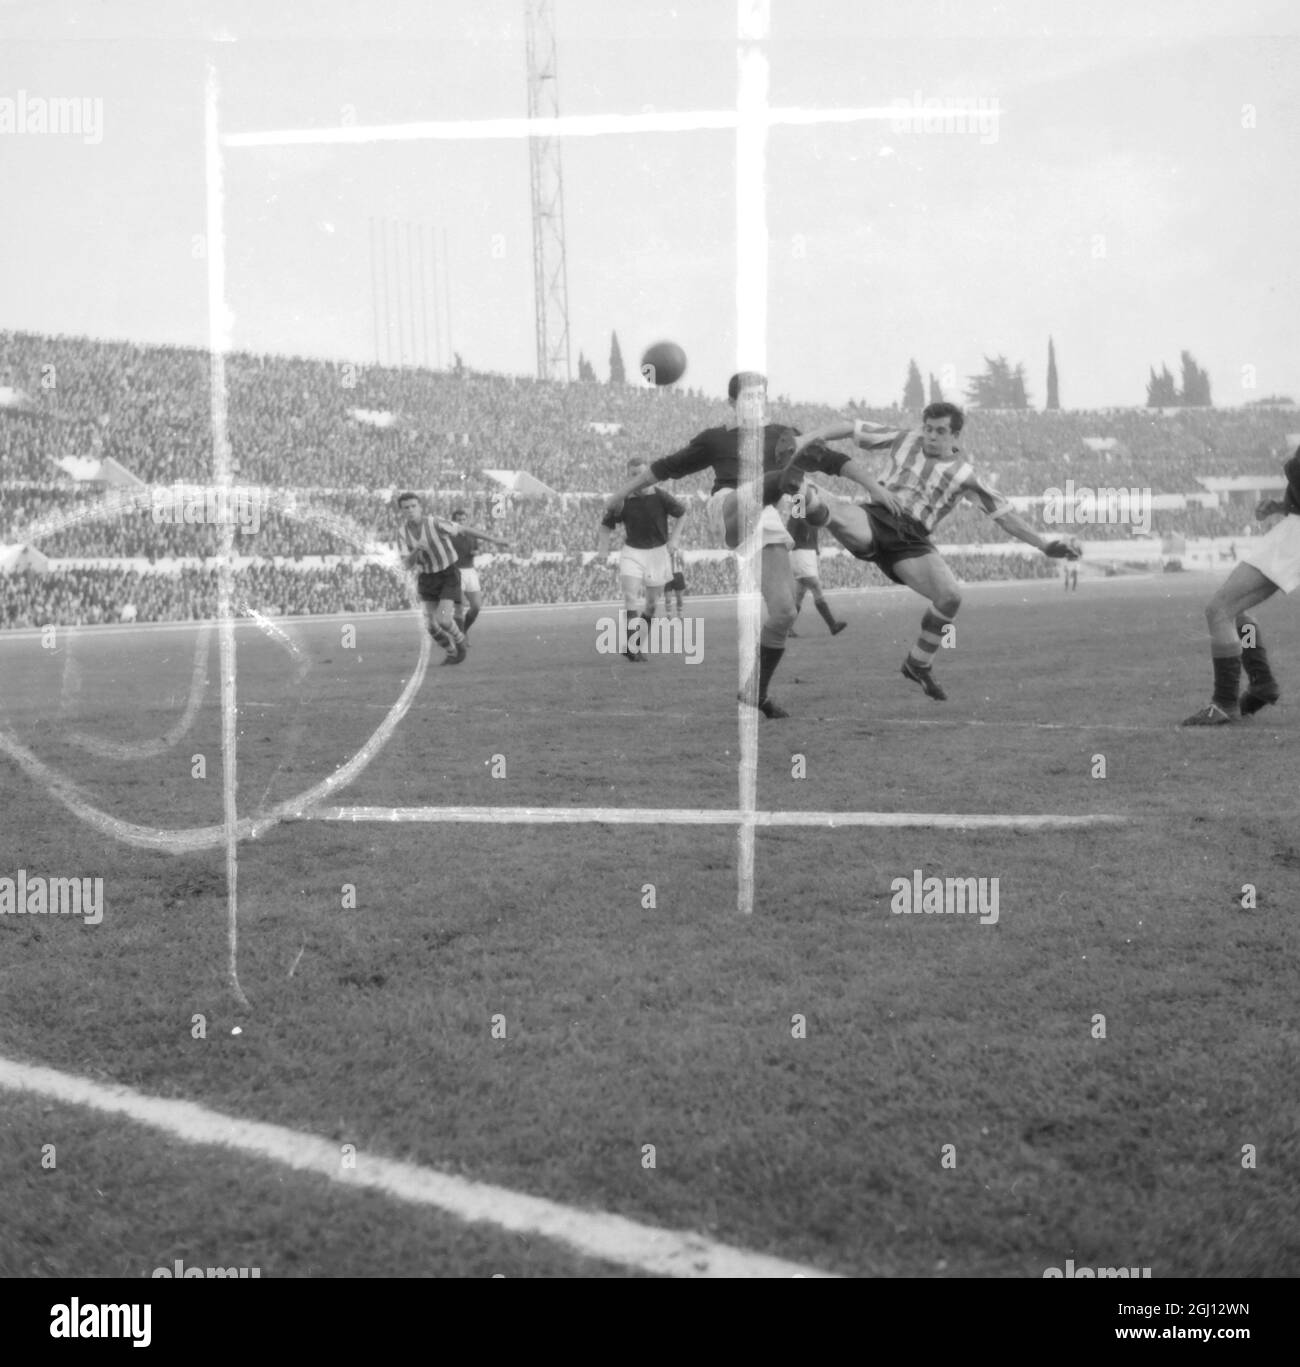 FUSSBALL INTER CITIES MESSEN CUP ROMAS FANTHAN & FONTANA IM DUELL 16. DEZEMBER 1961 Stockfoto